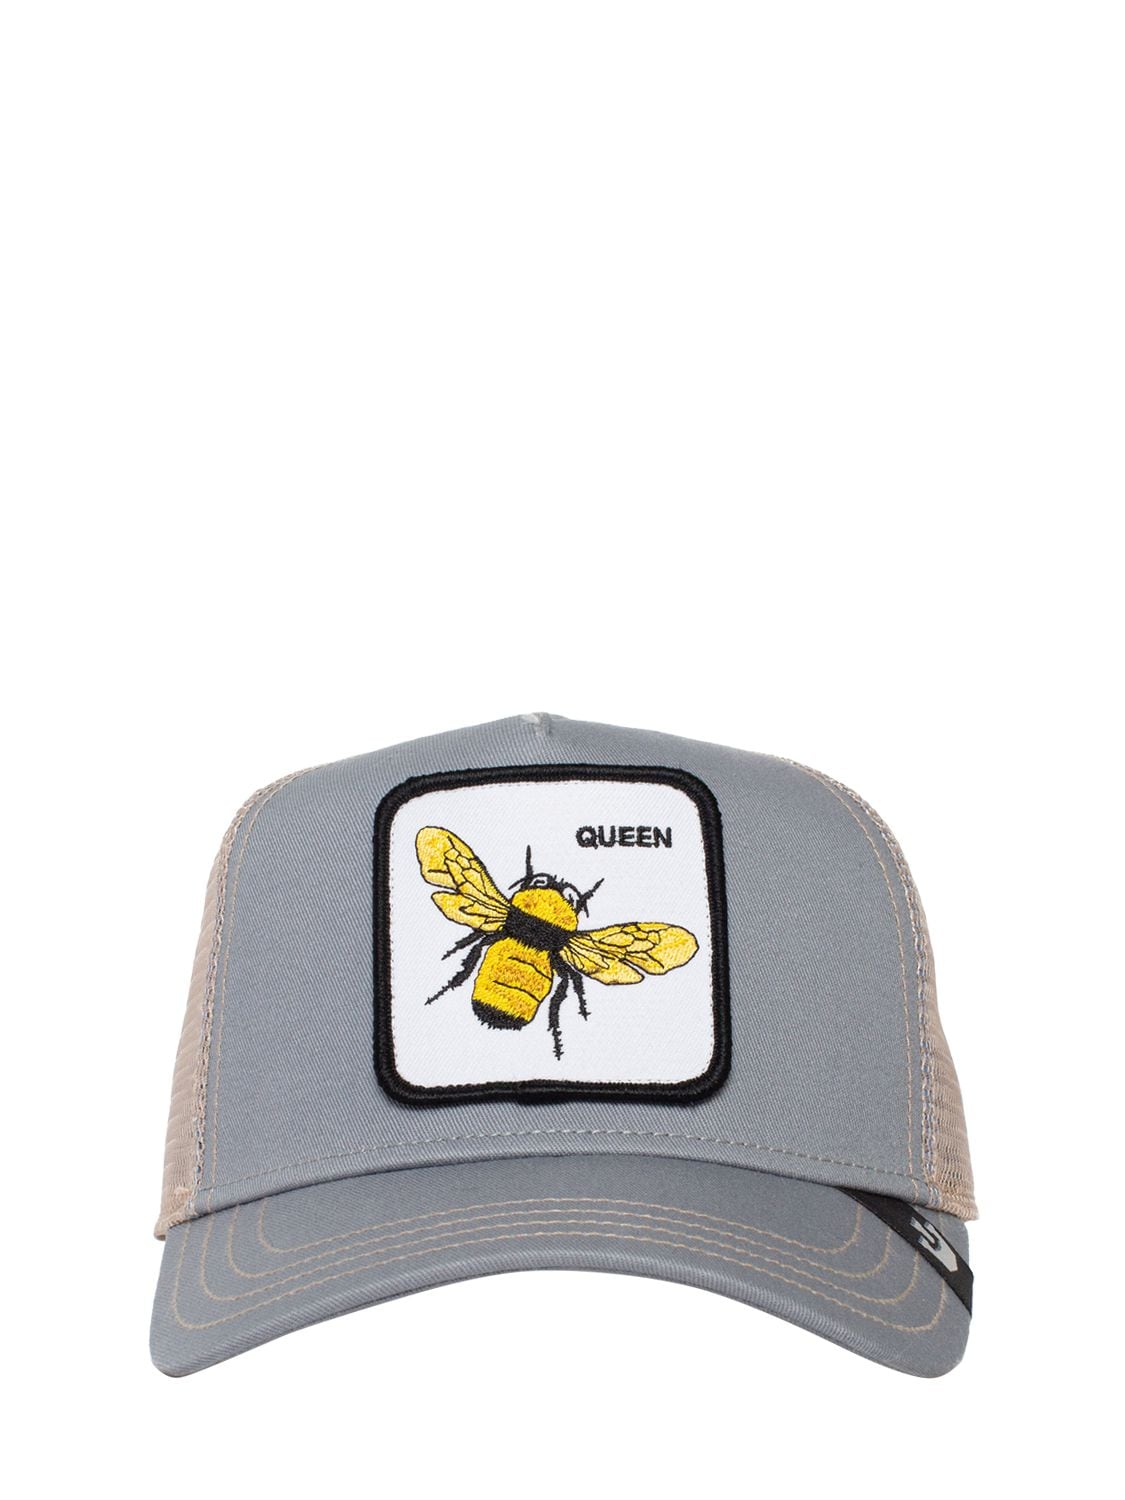 Image of Queen Bee Trucker Hat W/ Patch